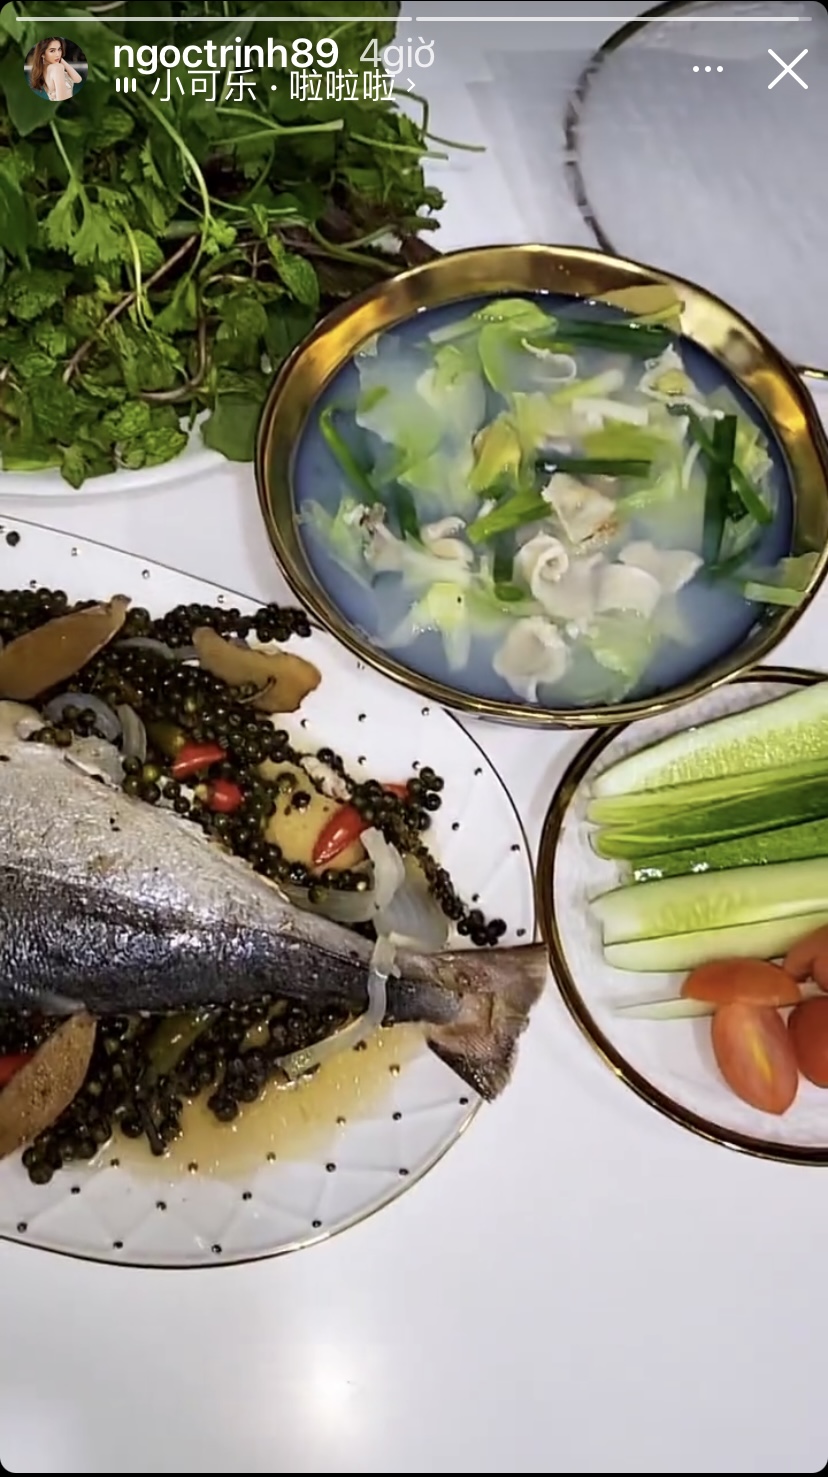 Thực đơn 'càng ăn càng giảm' ngày thứ 12 của Ngọc Trinh có cá hấp tiêu, canh, dưa leo, cà chua và một vài loại rau tươi sống.